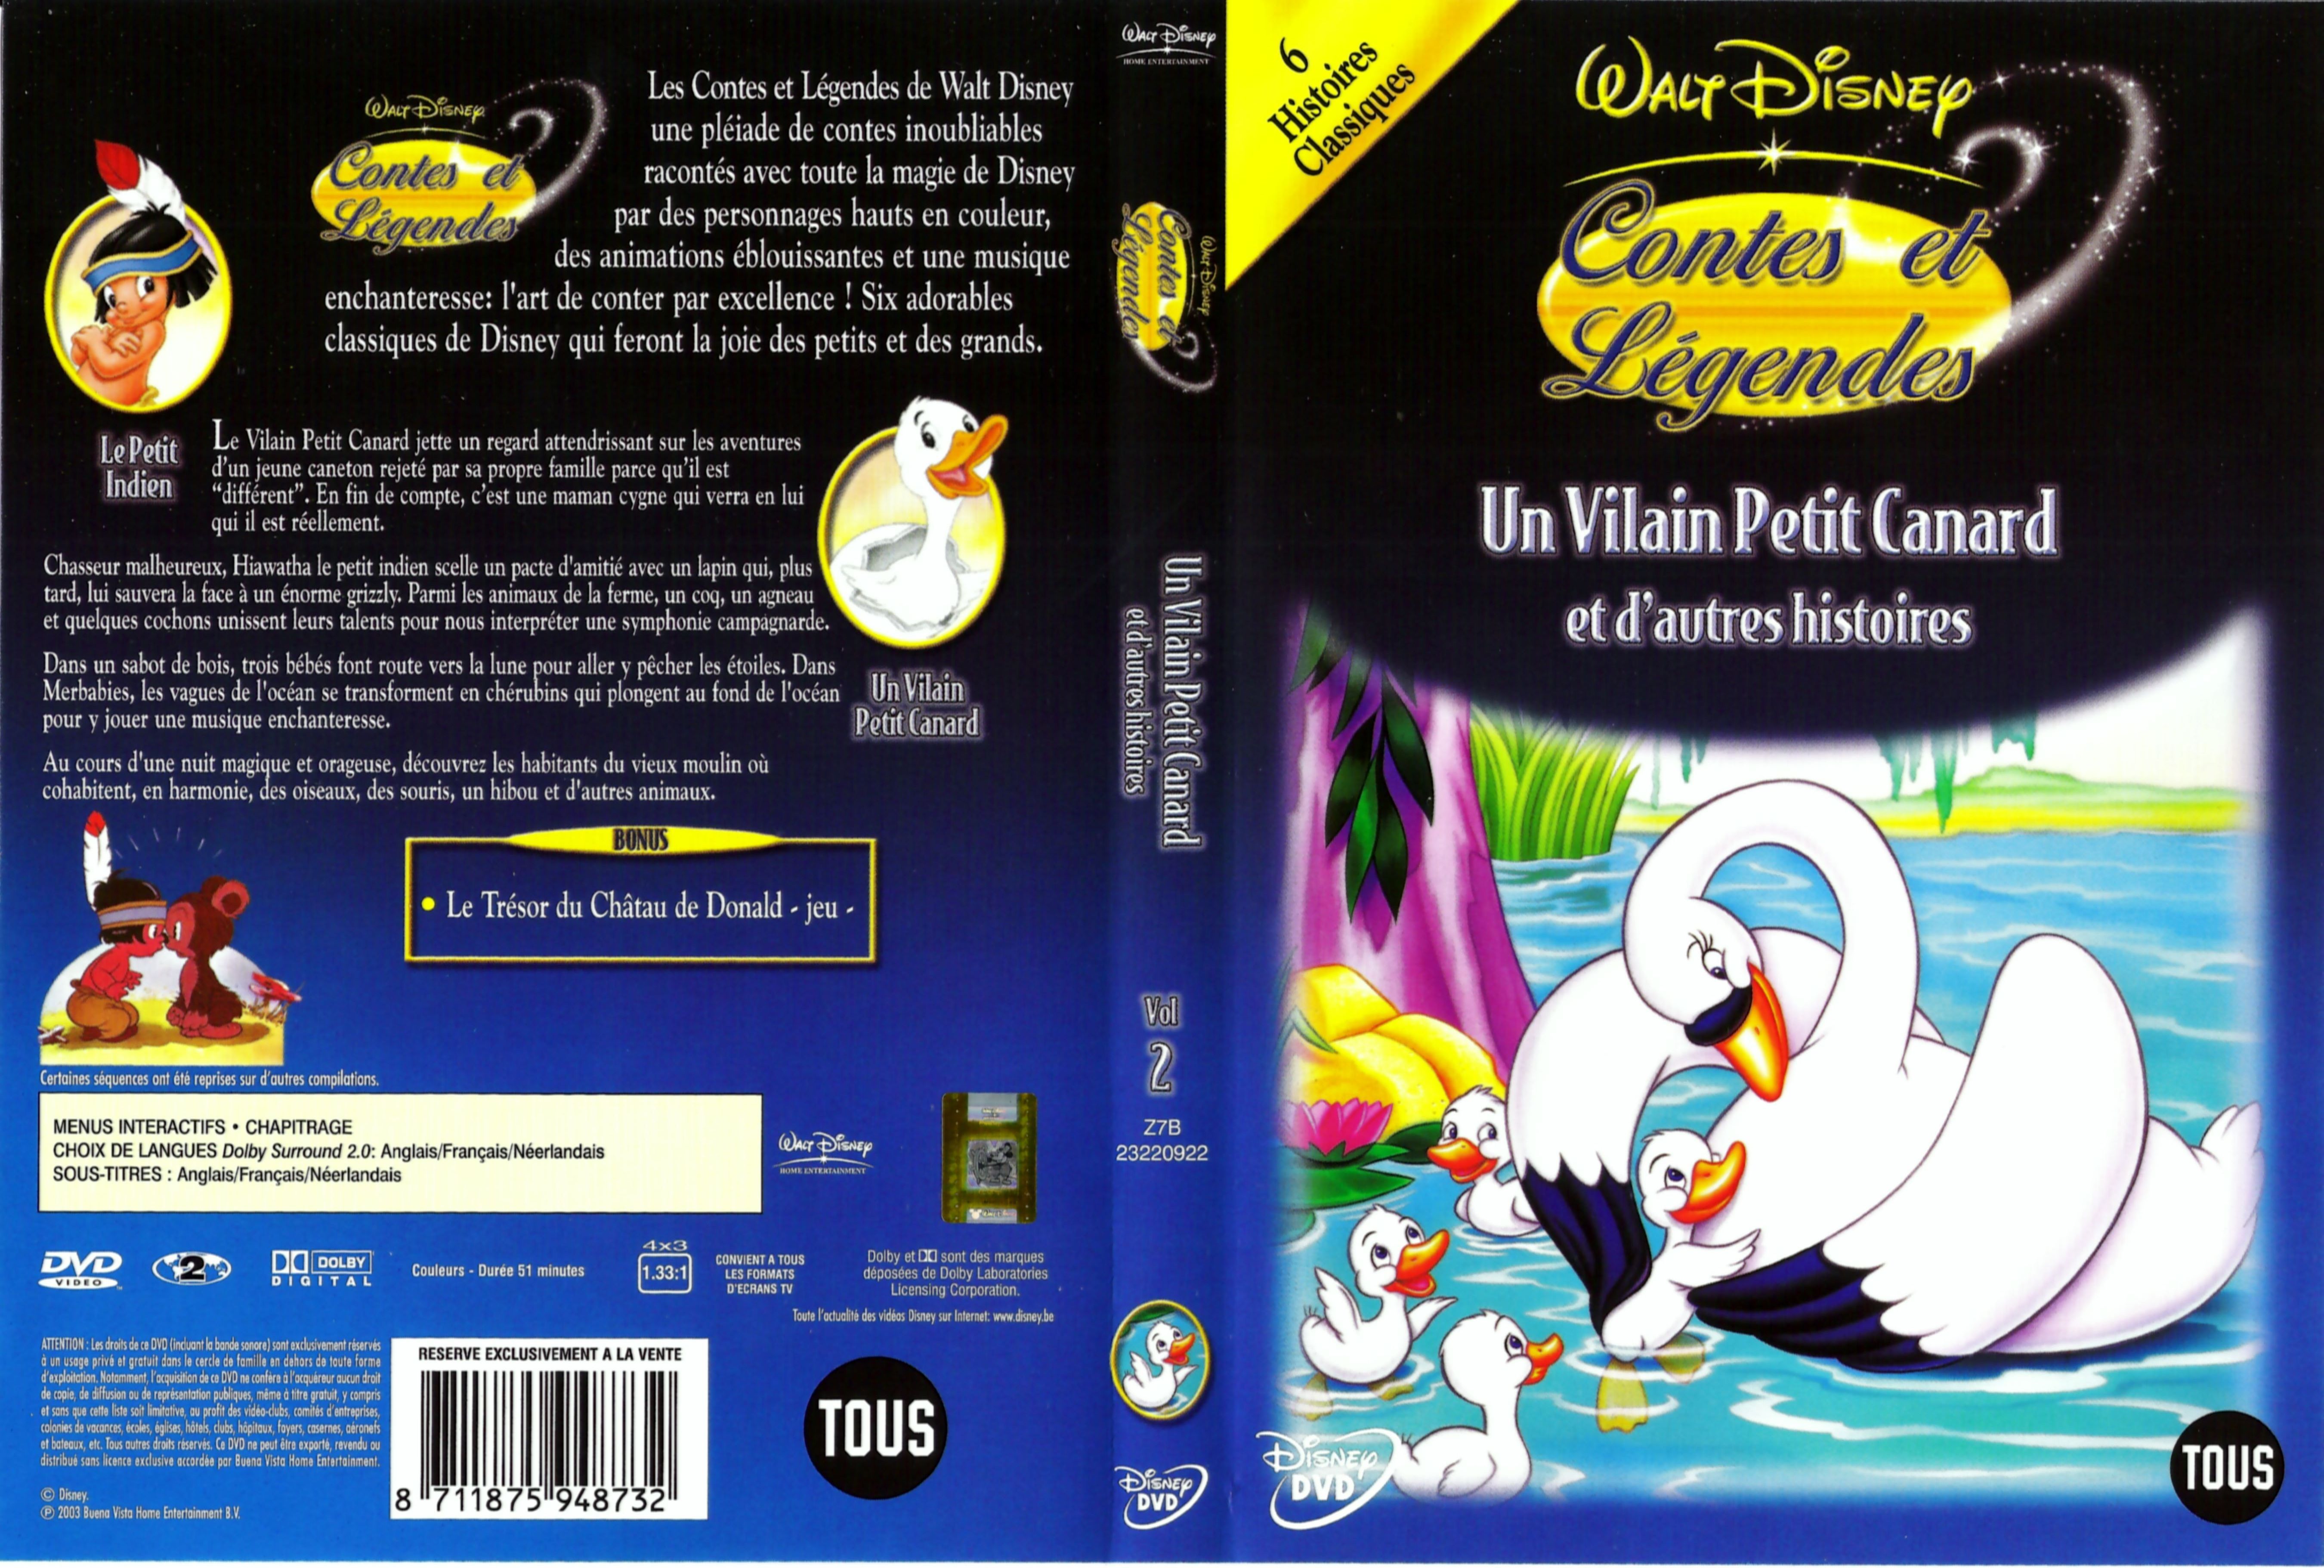 Jaquette DVD Contes et legendes 2 v3